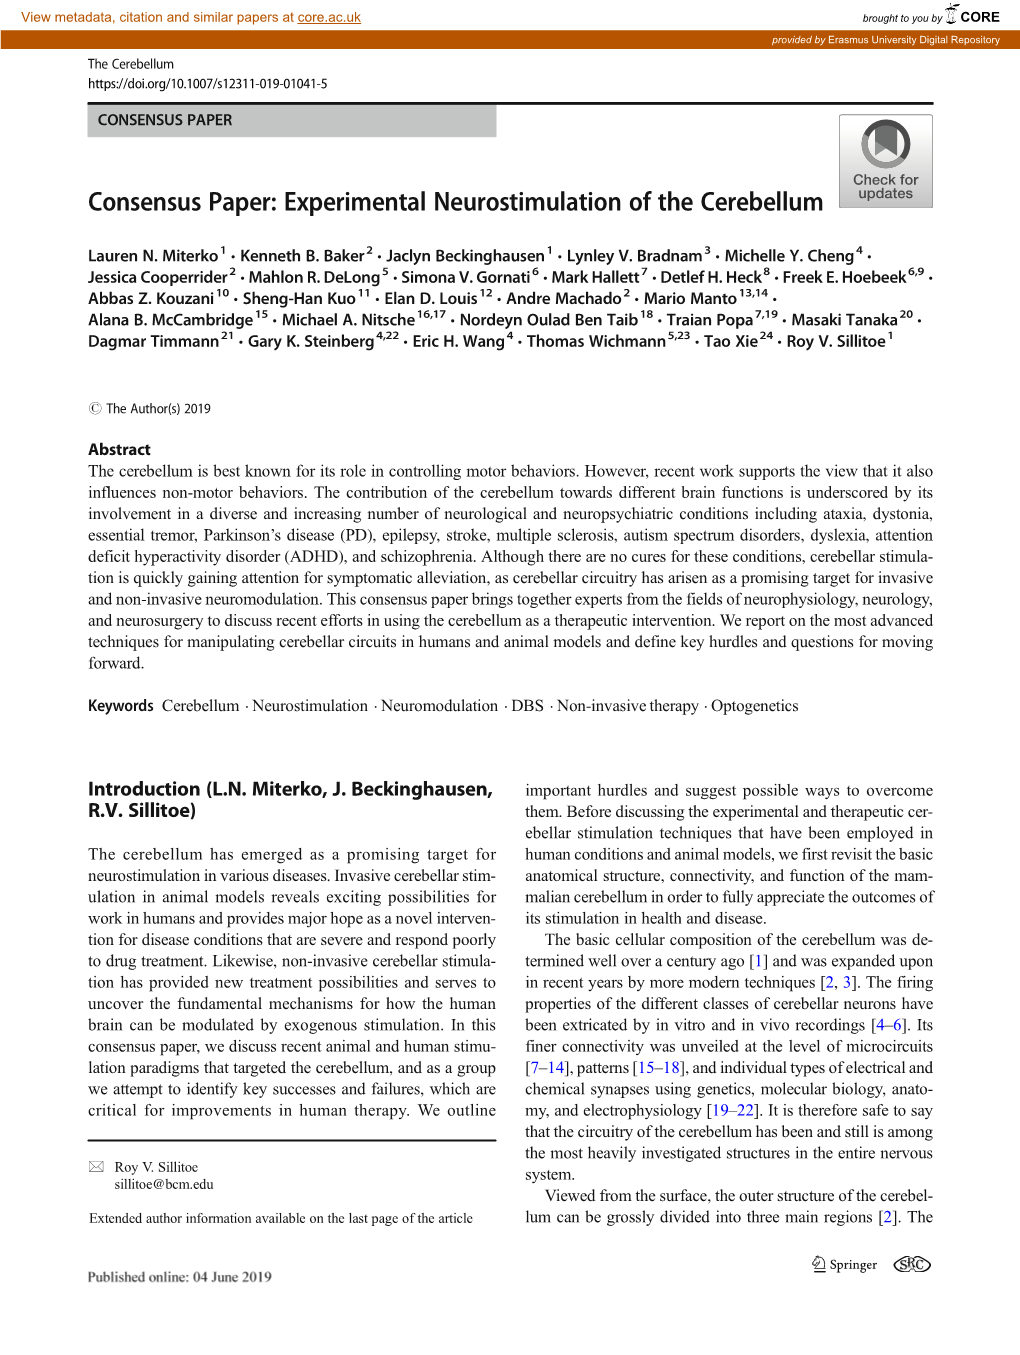 Consensus Paper: Experimental Neurostimulation of the Cerebellum